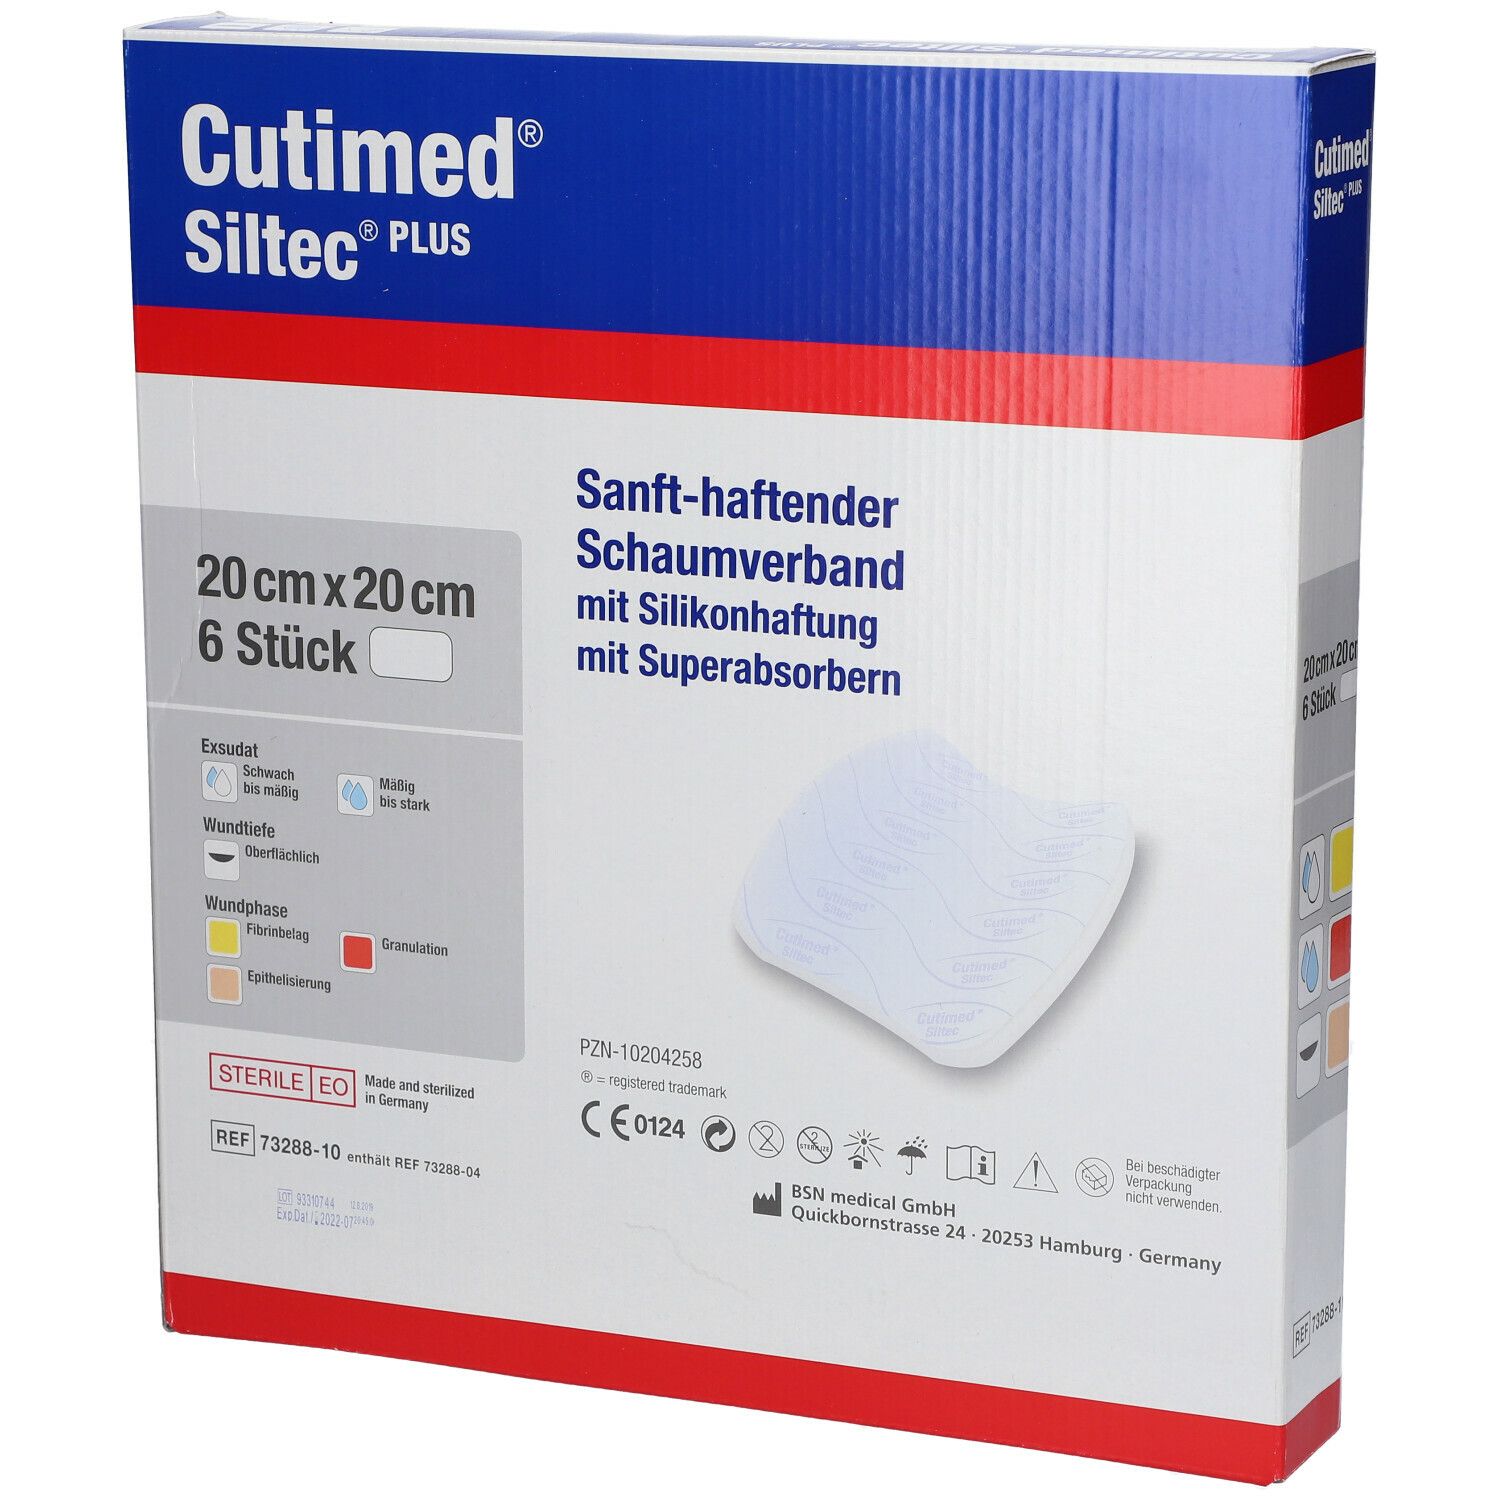 Cutimed® Siltec Plus 20 cm x 20 cm